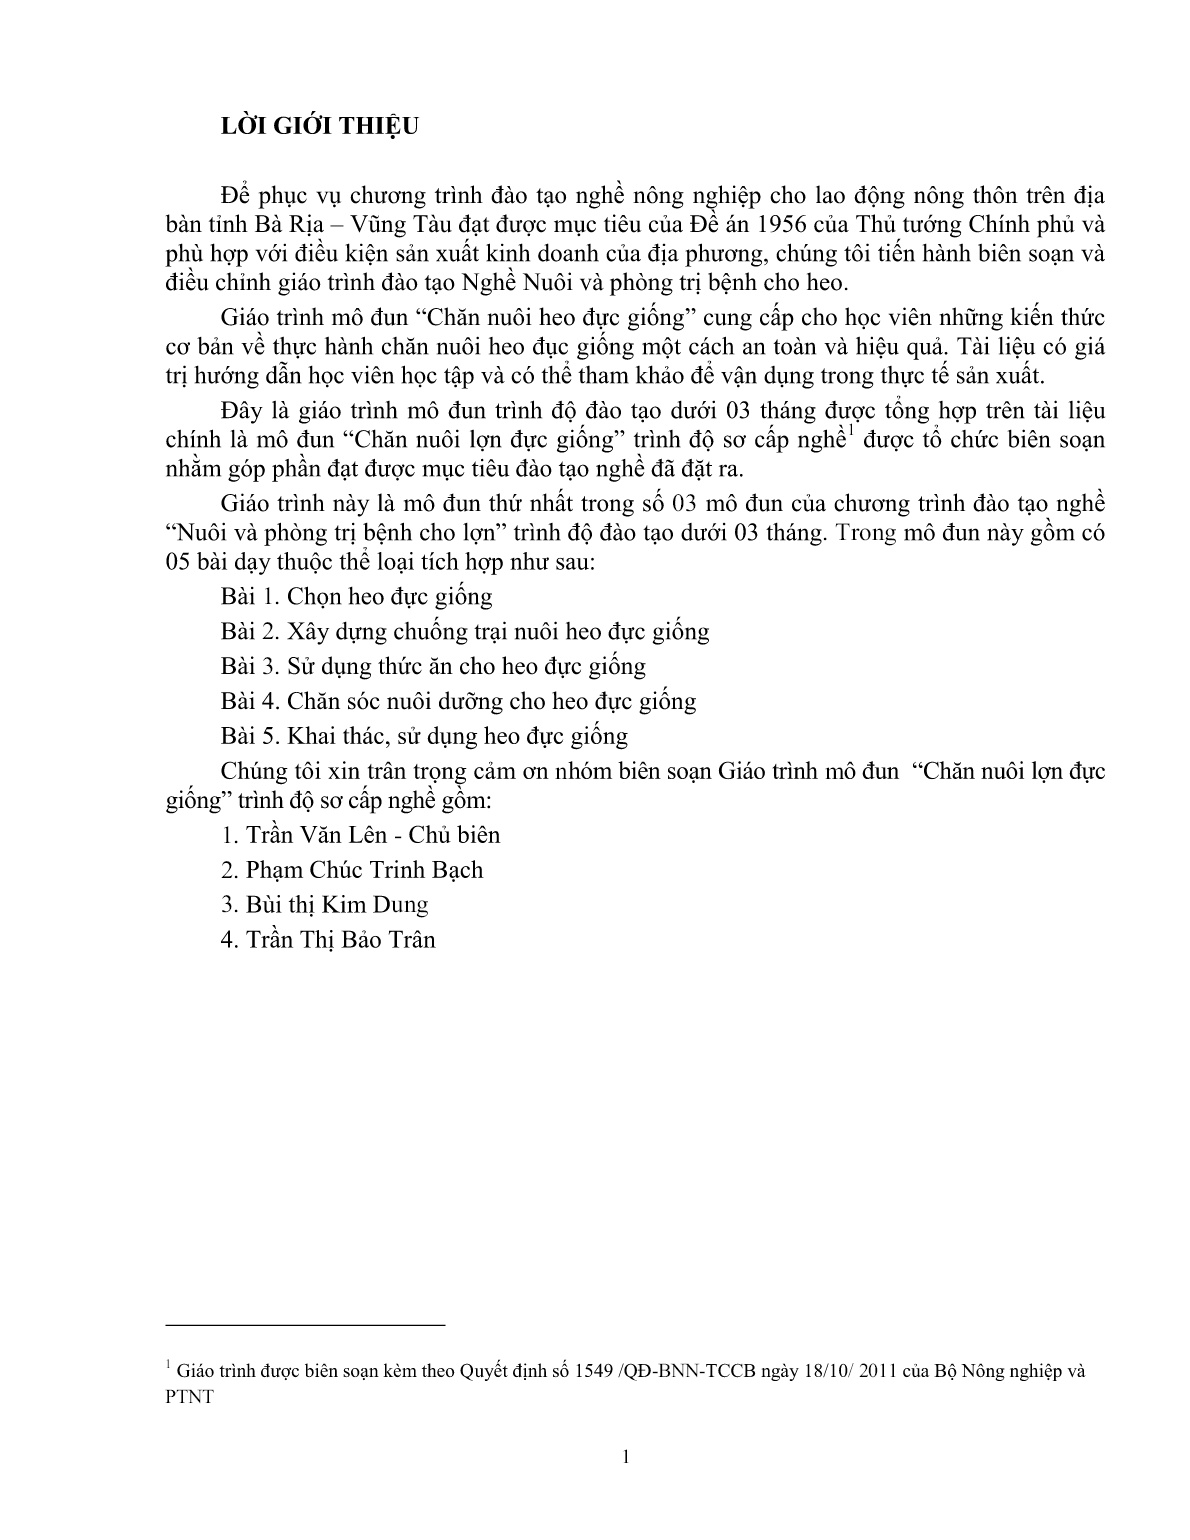 Giáo trình mô đun Chăn nuôi heo đực giống (Trình độ: Đào tạo dưới 3 tháng) trang 2